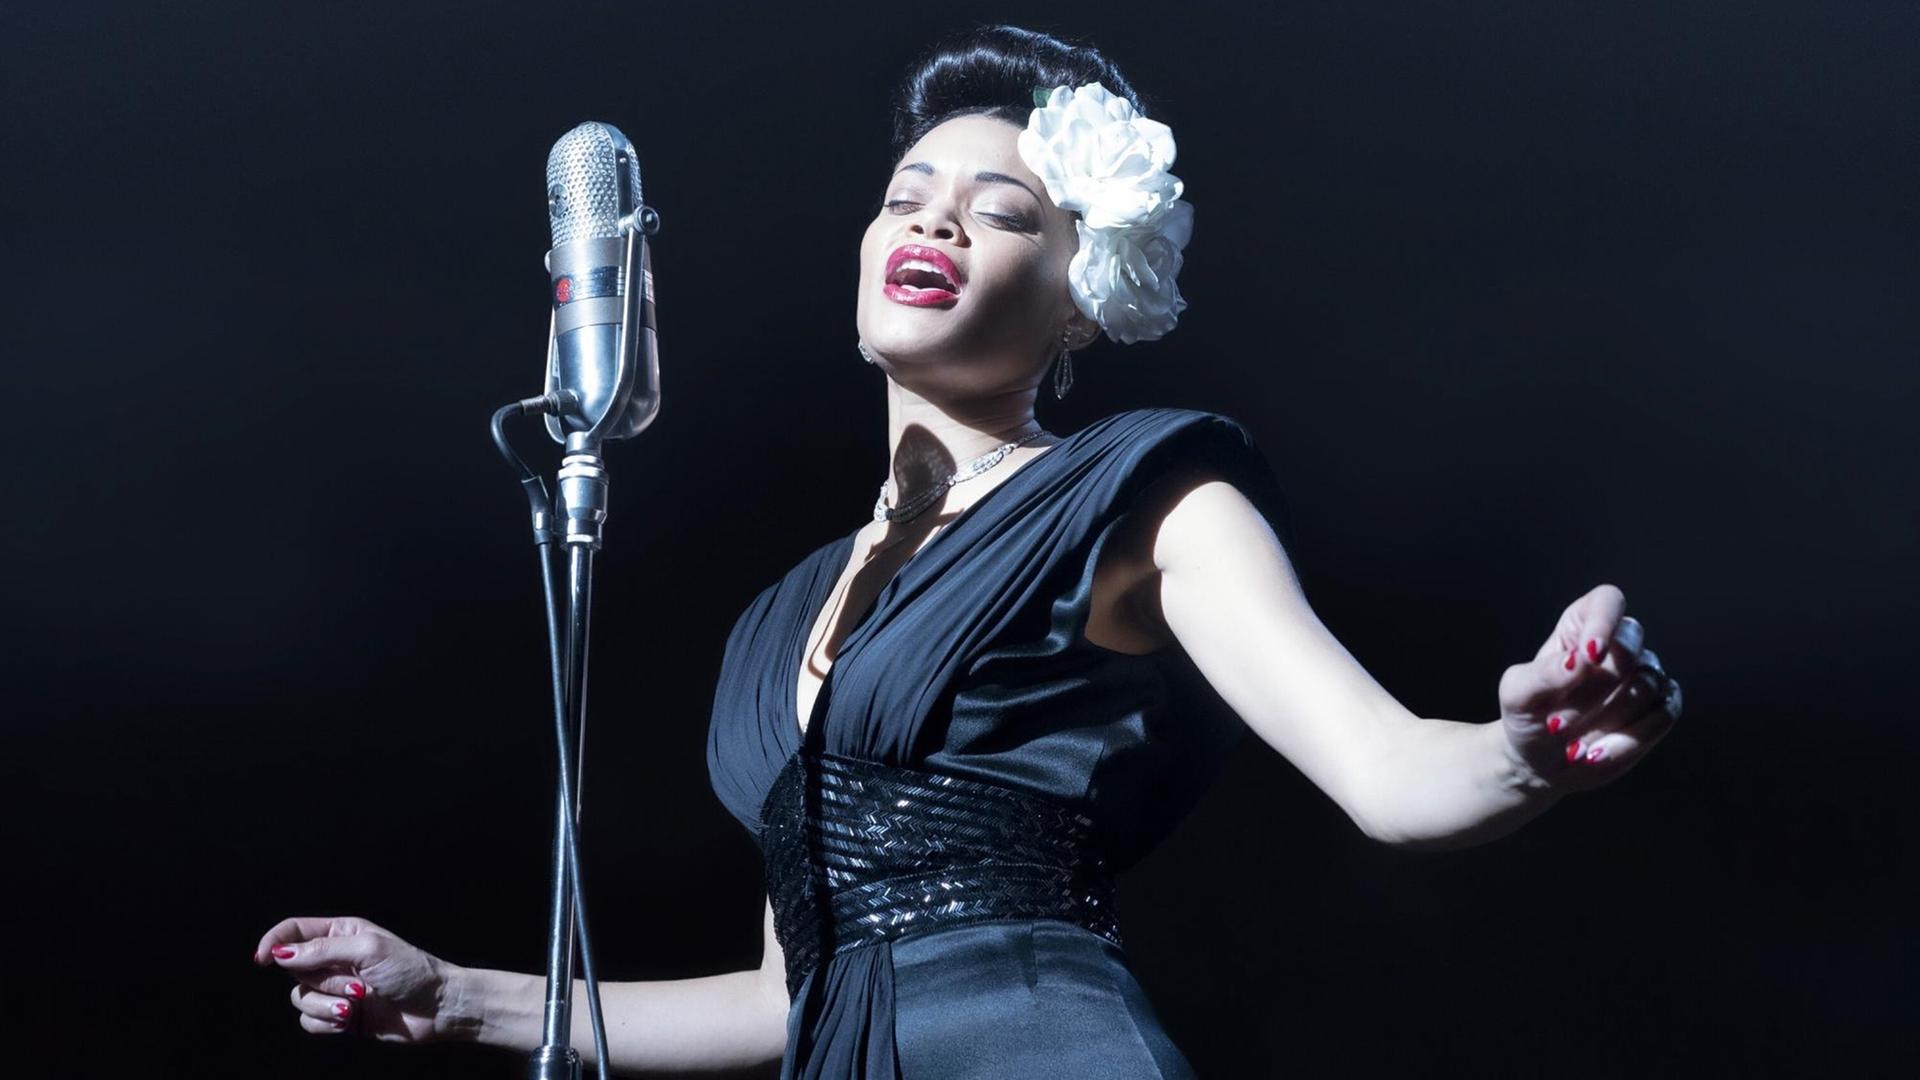 Eine elegante Jazz-Sängerin im schwarzen Kleid auf der Bühne